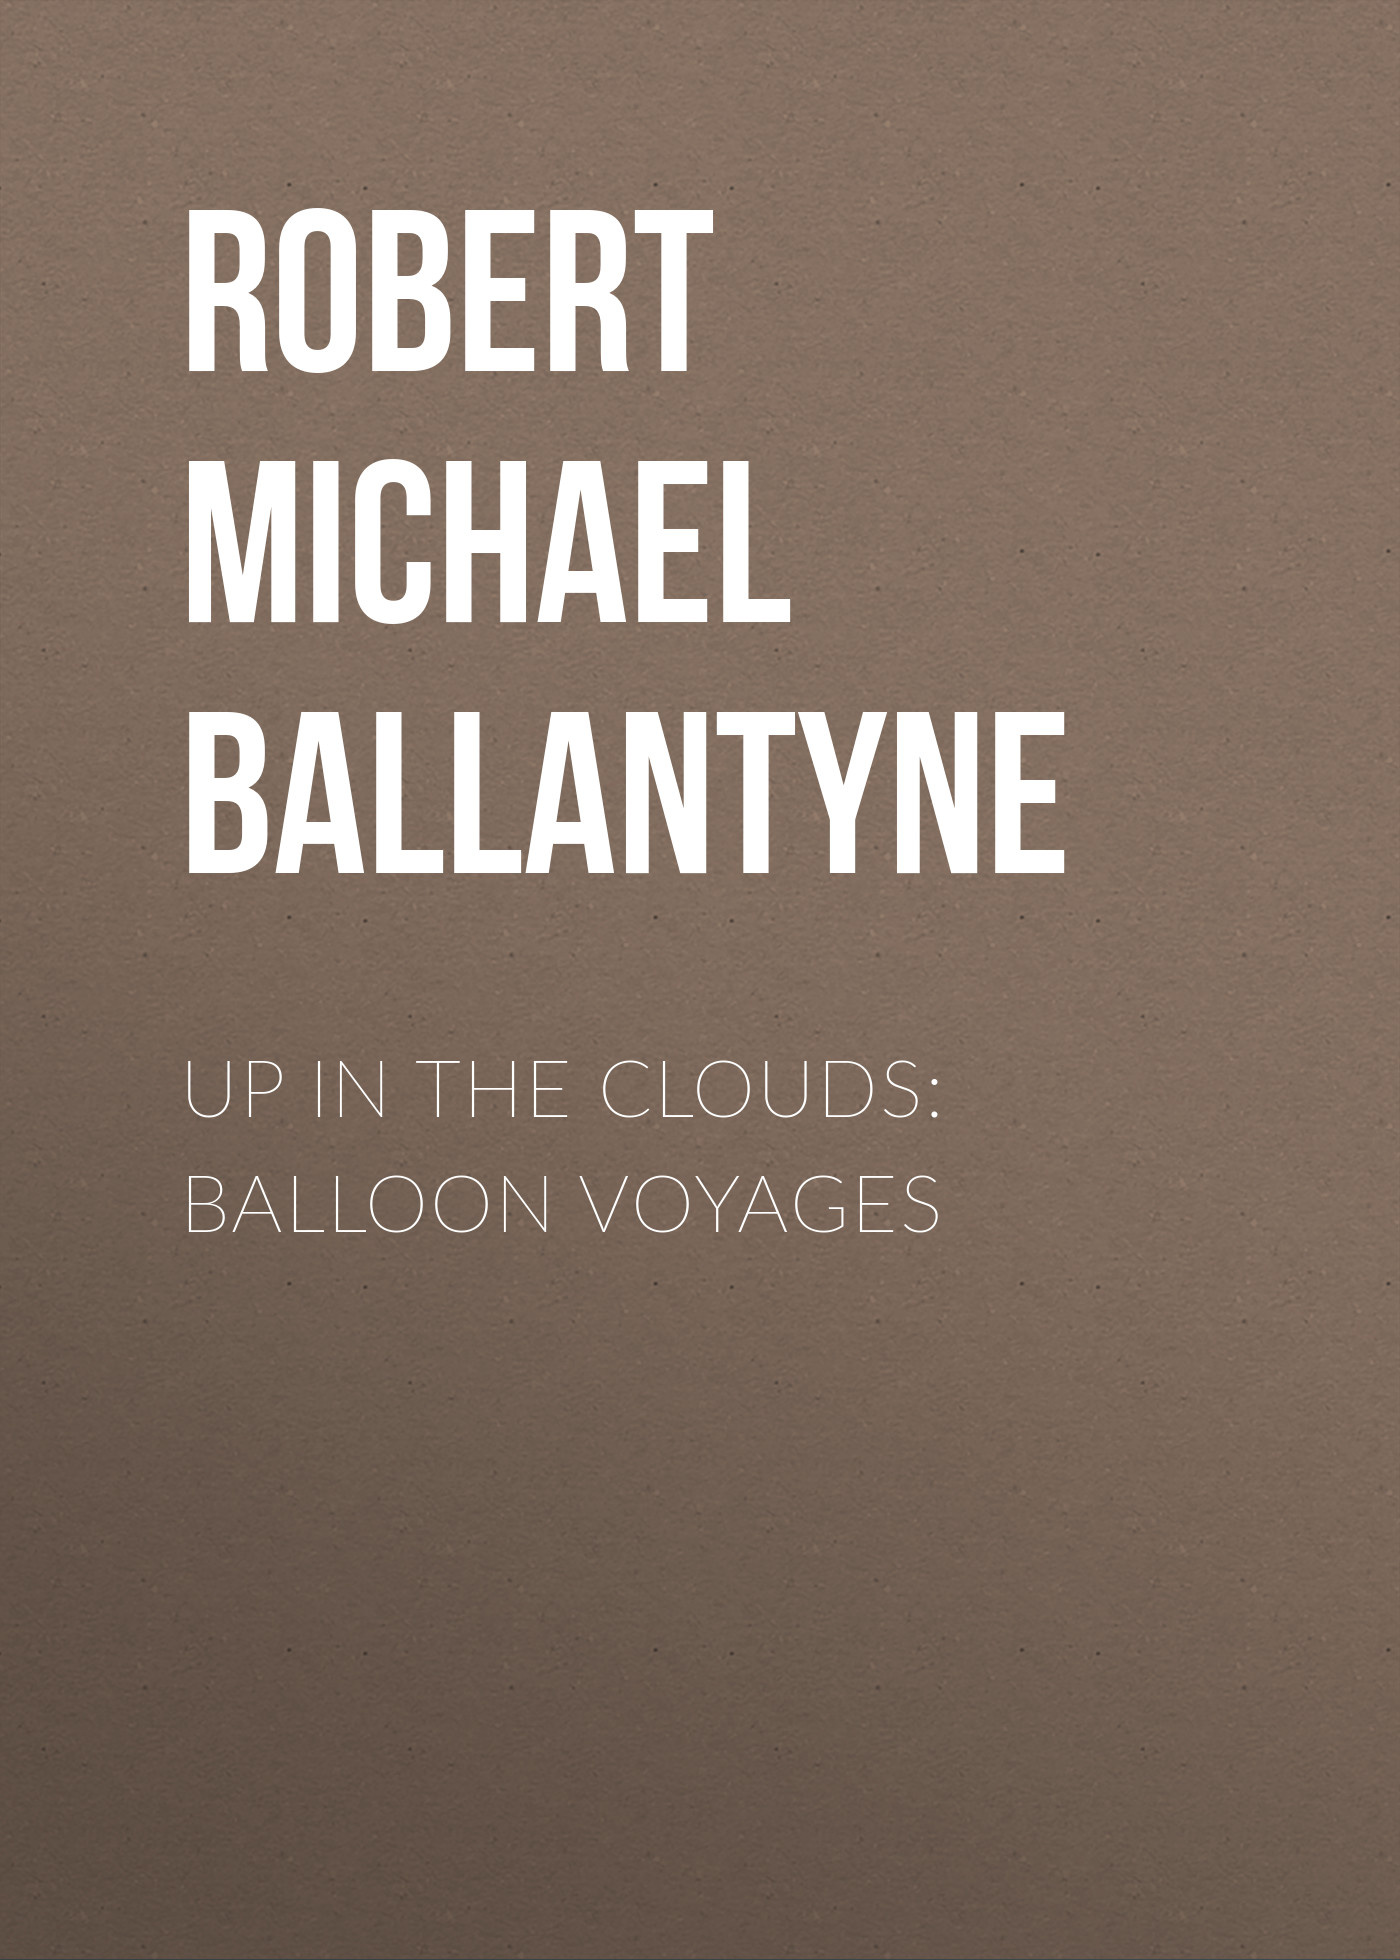 Книга Up in the Clouds: Balloon Voyages из серии , созданная Robert Michael Ballantyne, может относится к жанру Детские приключения, Литература 19 века, Зарубежная старинная литература, Зарубежная классика, Зарубежные детские книги. Стоимость электронной книги Up in the Clouds: Balloon Voyages с идентификатором 36097189 составляет 0 руб.